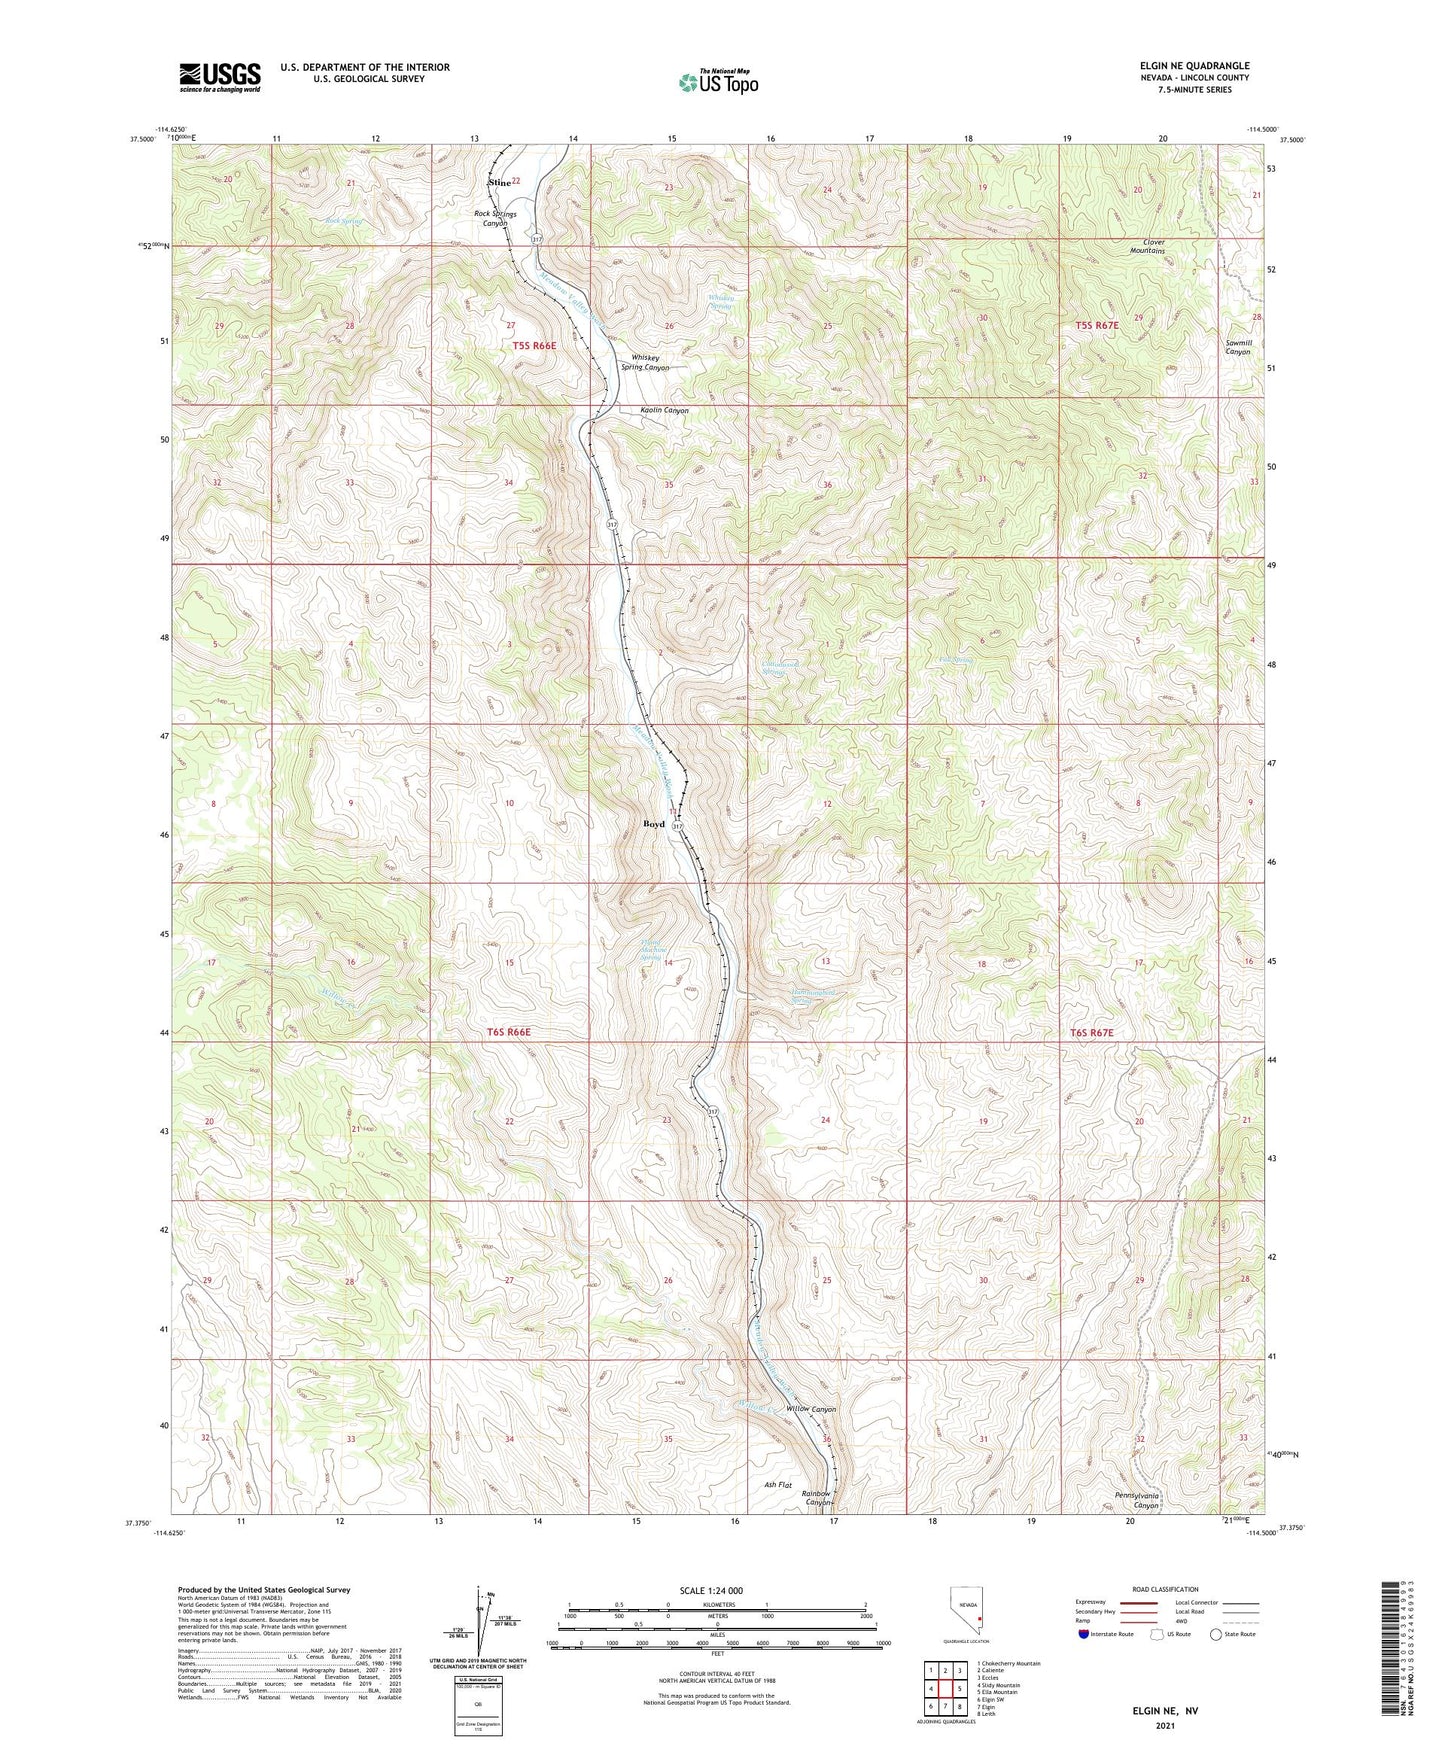 Elgin NE Nevada US Topo Map Image